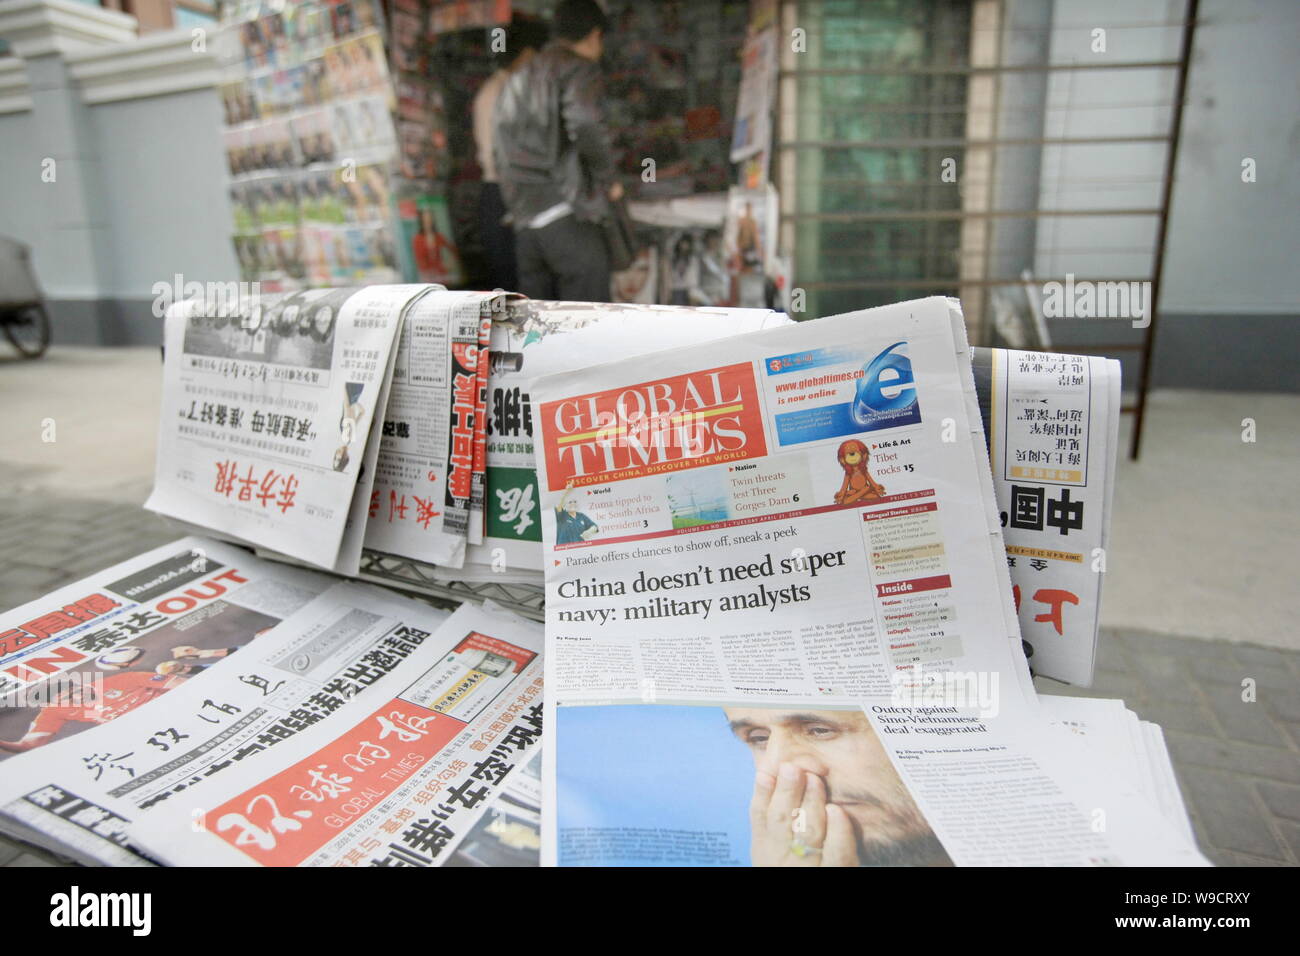 Global Times Zeitung und andere Zeitungen und Zeitschriften sind für Verkauf zu einem Zeitungskiosk in Shanghai, China, Mittwoch, 22. April 2009 gesehen. Die Produkteinführung Stockfoto